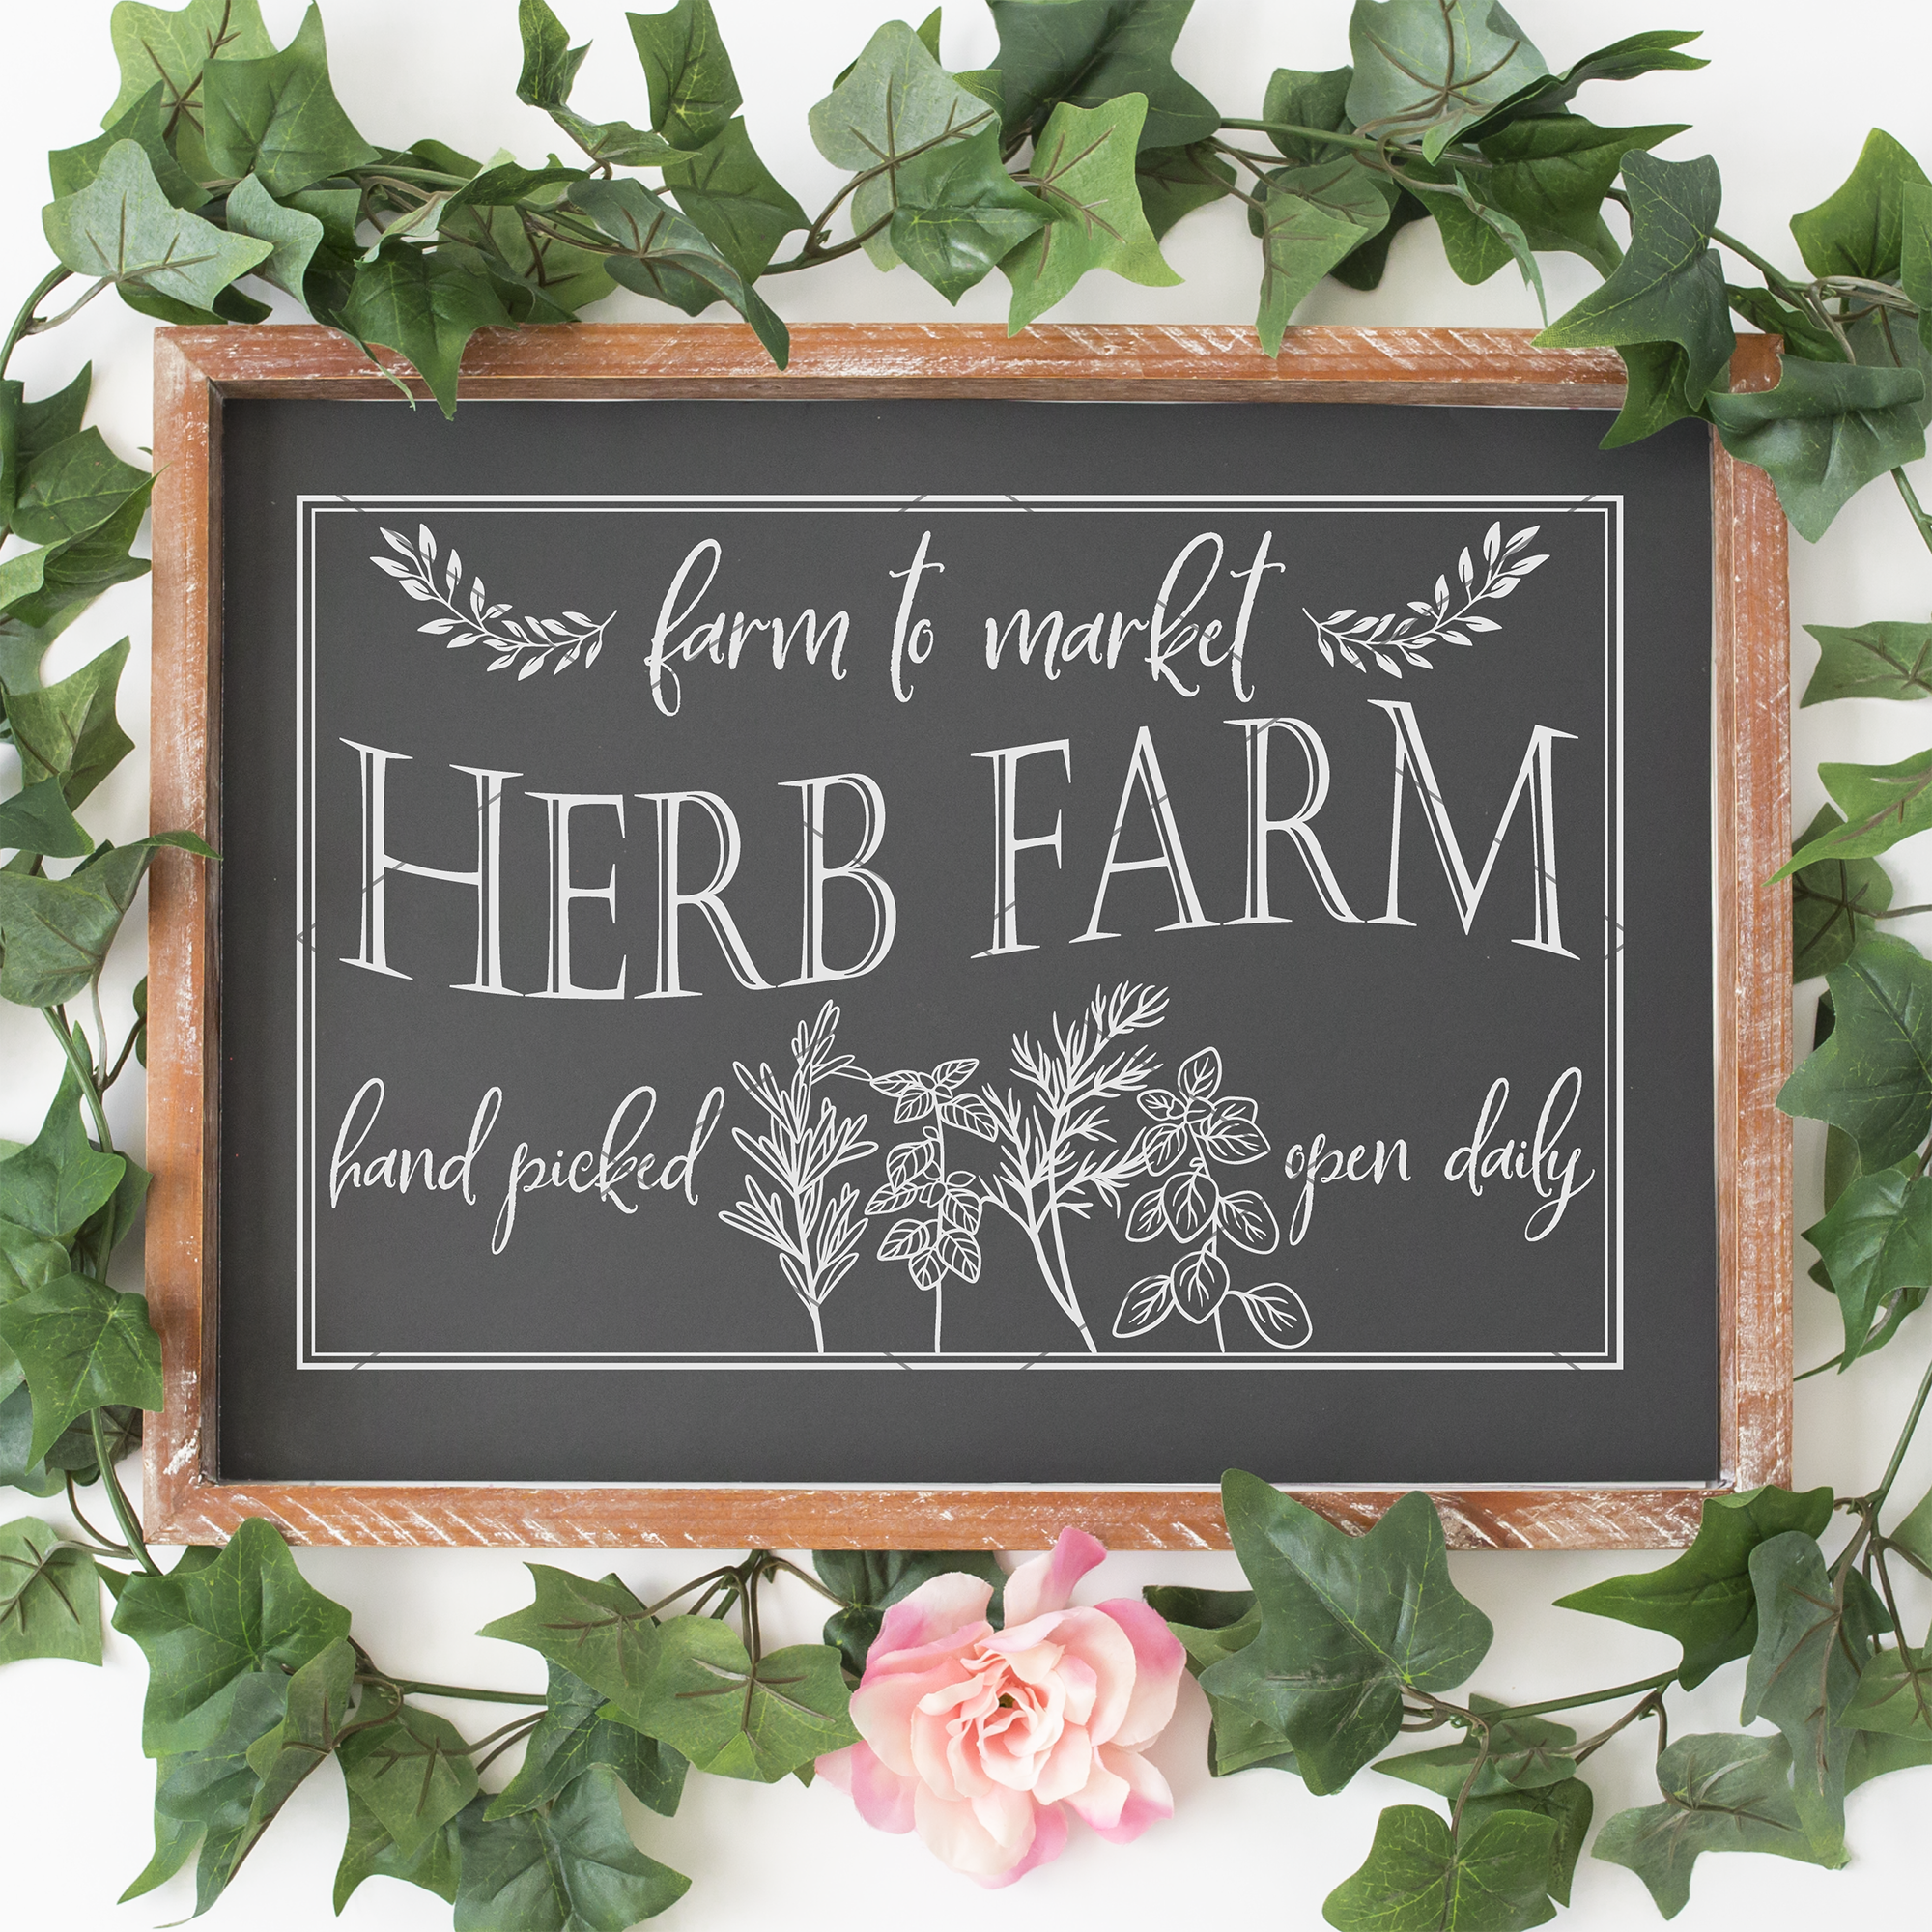 Vintage Herb Farm Sign SVG File for Cricut/Silhouette - Commercial Use SVG Files for Cricut & Silhouette